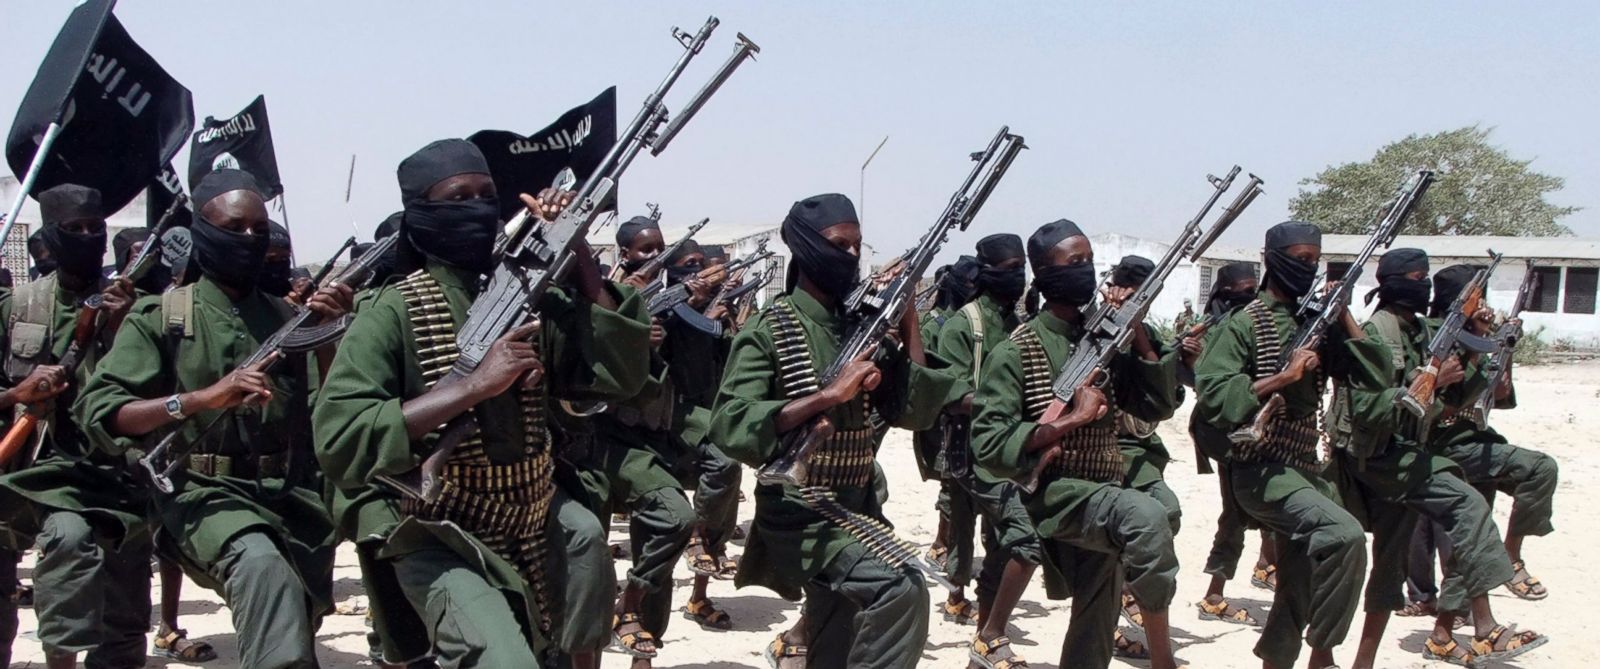 Terror in East Africa: Al Shabaab